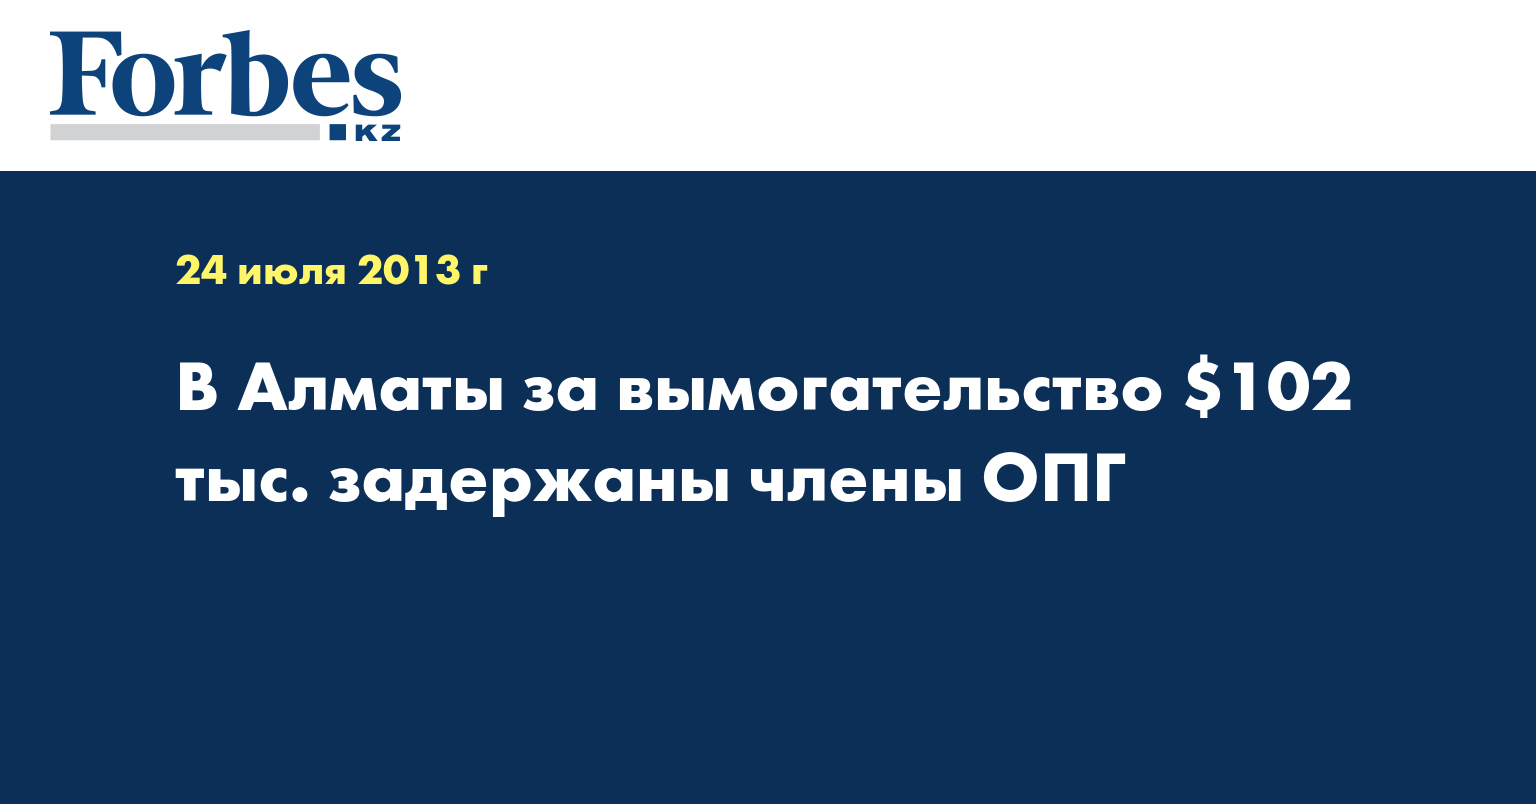 В Алматы за вымогательство $102 тыс. задержаны члены ОПГ